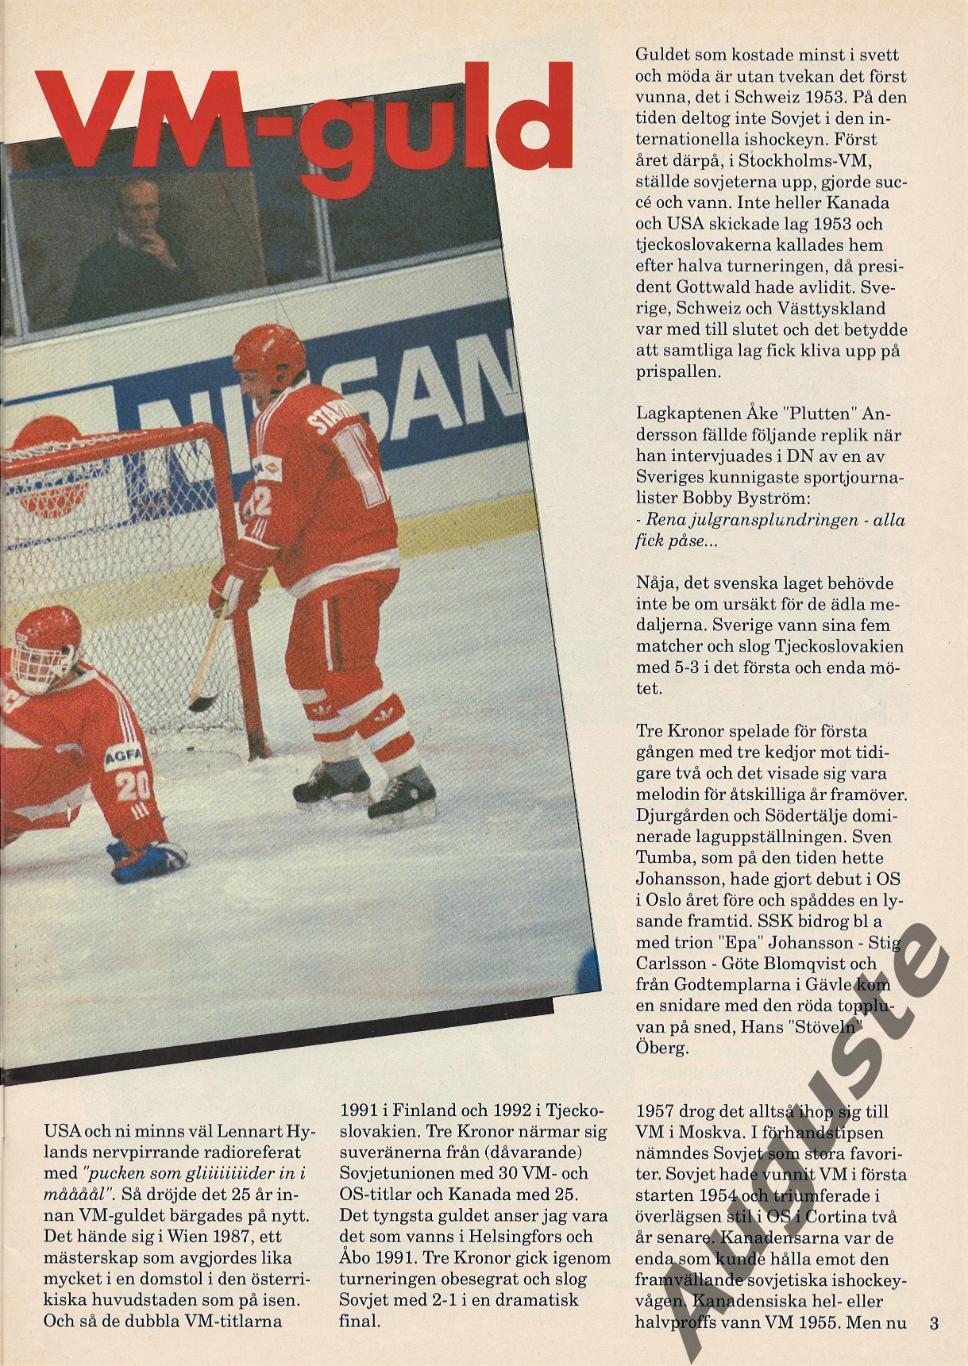 Шведский журнал к чемпионату мира по хоккею в ФРГ 1993 г. Сборная России. 2